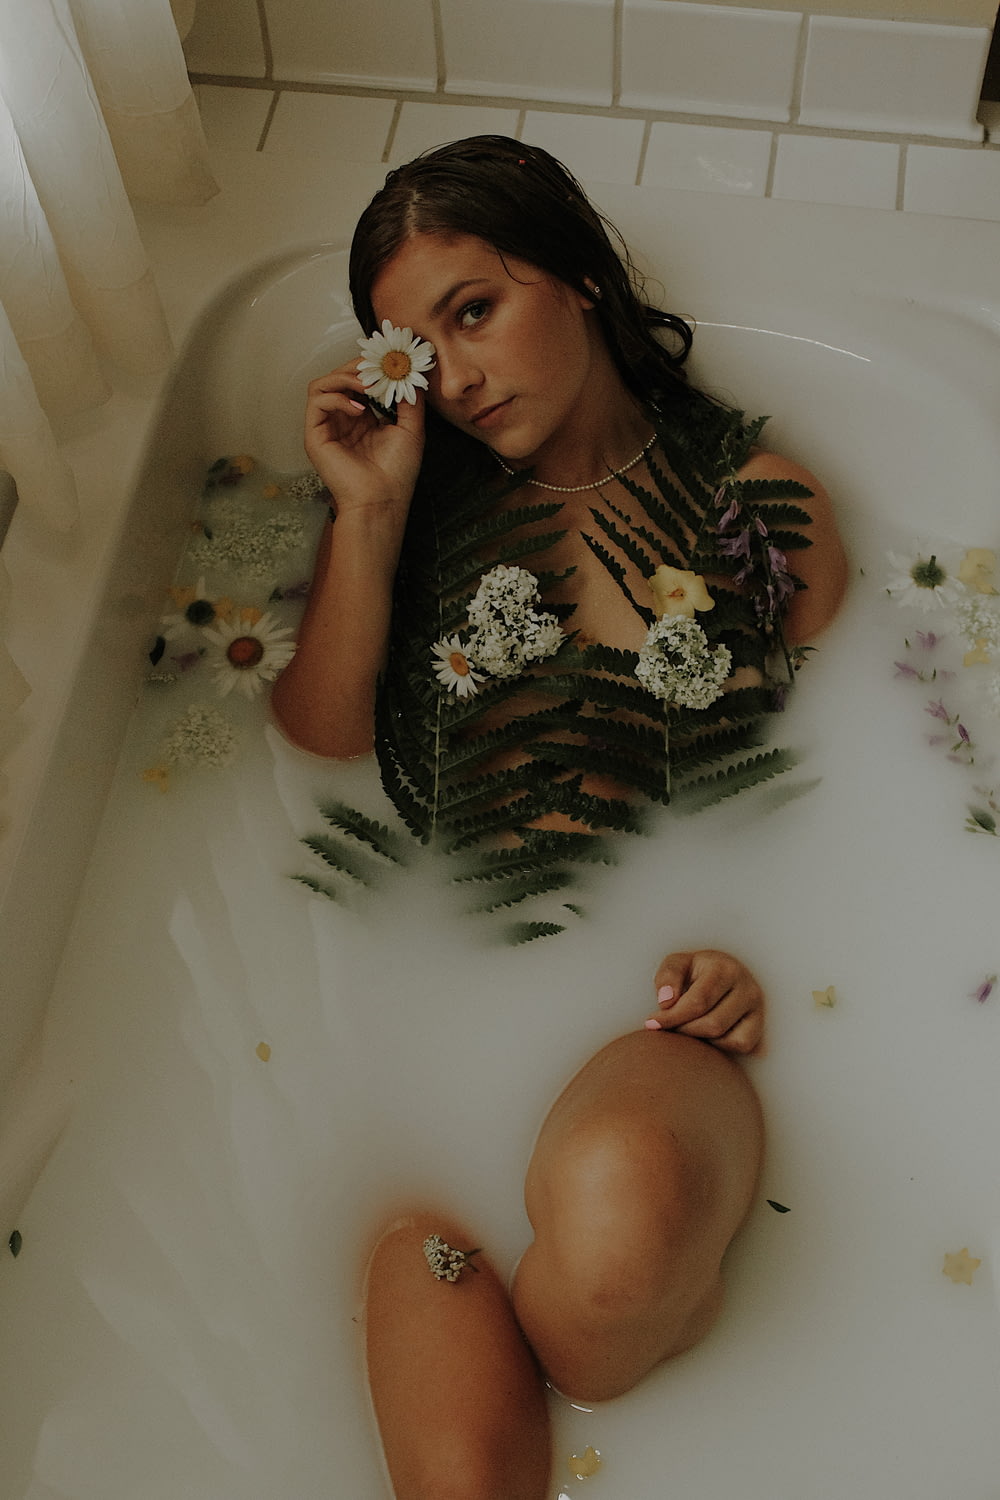 a person sitting in a bathtub